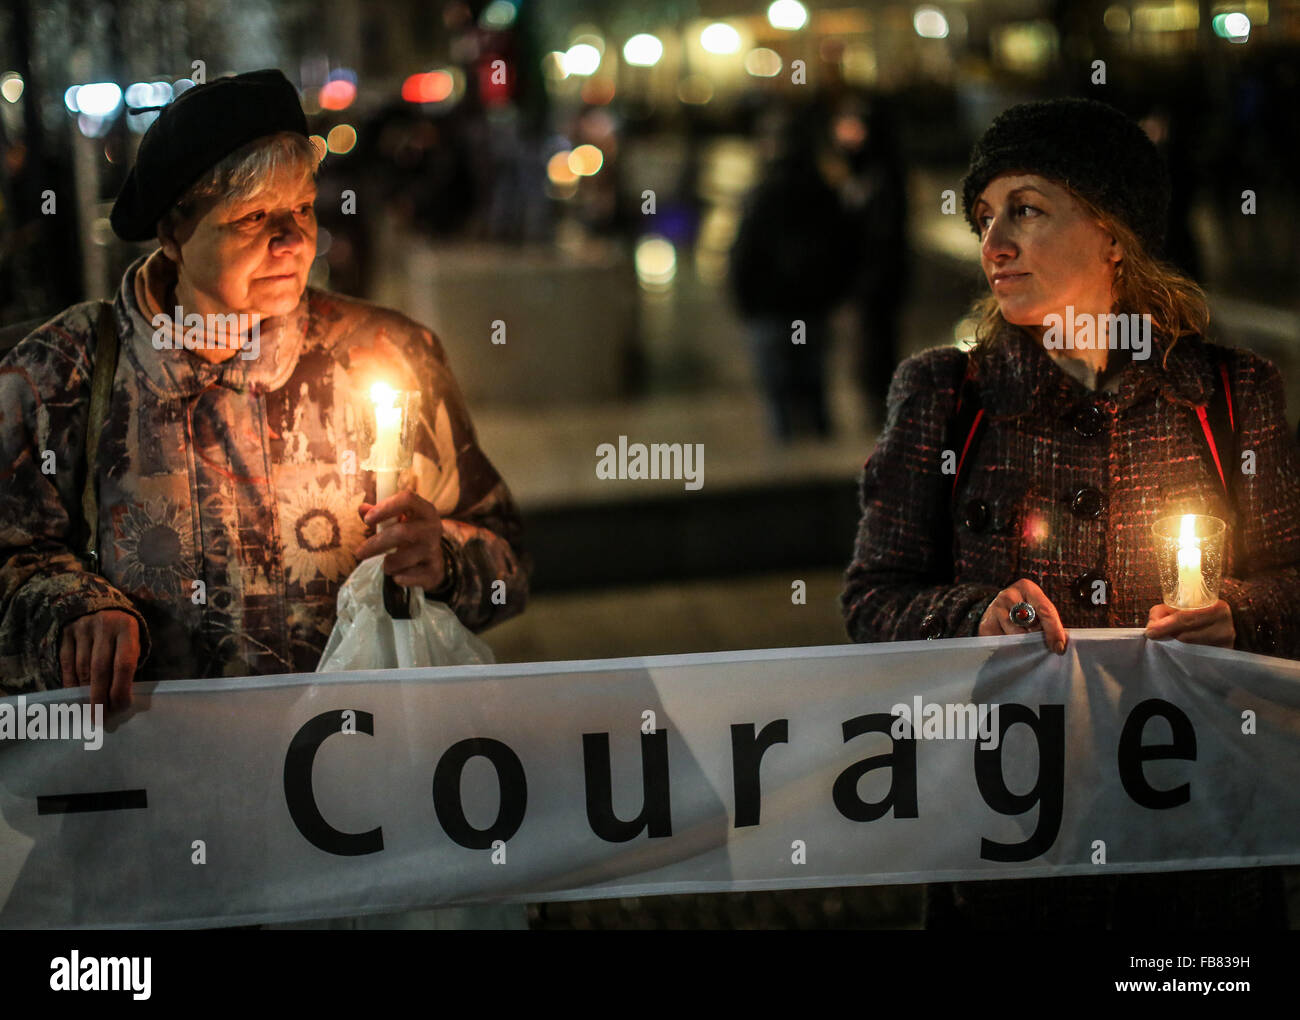 (160112)-- LEIPZIG, 12 janvier 2016(AFP)-- gens tenant des bougies et une bannière disant 'courage' assister à un rassemblement, à Leipzig, en Allemagne, le 11 janvier 2016. Formant un 'lumières' kilomètres de longueur, des milliers de personnes ont participé à un rassemblement contre le mouvement anti-Islam Legida dans l'est de la ville allemande de Leipzig lundi soir. (Xinhua/Zhang Fan)(l'azp) Banque D'Images